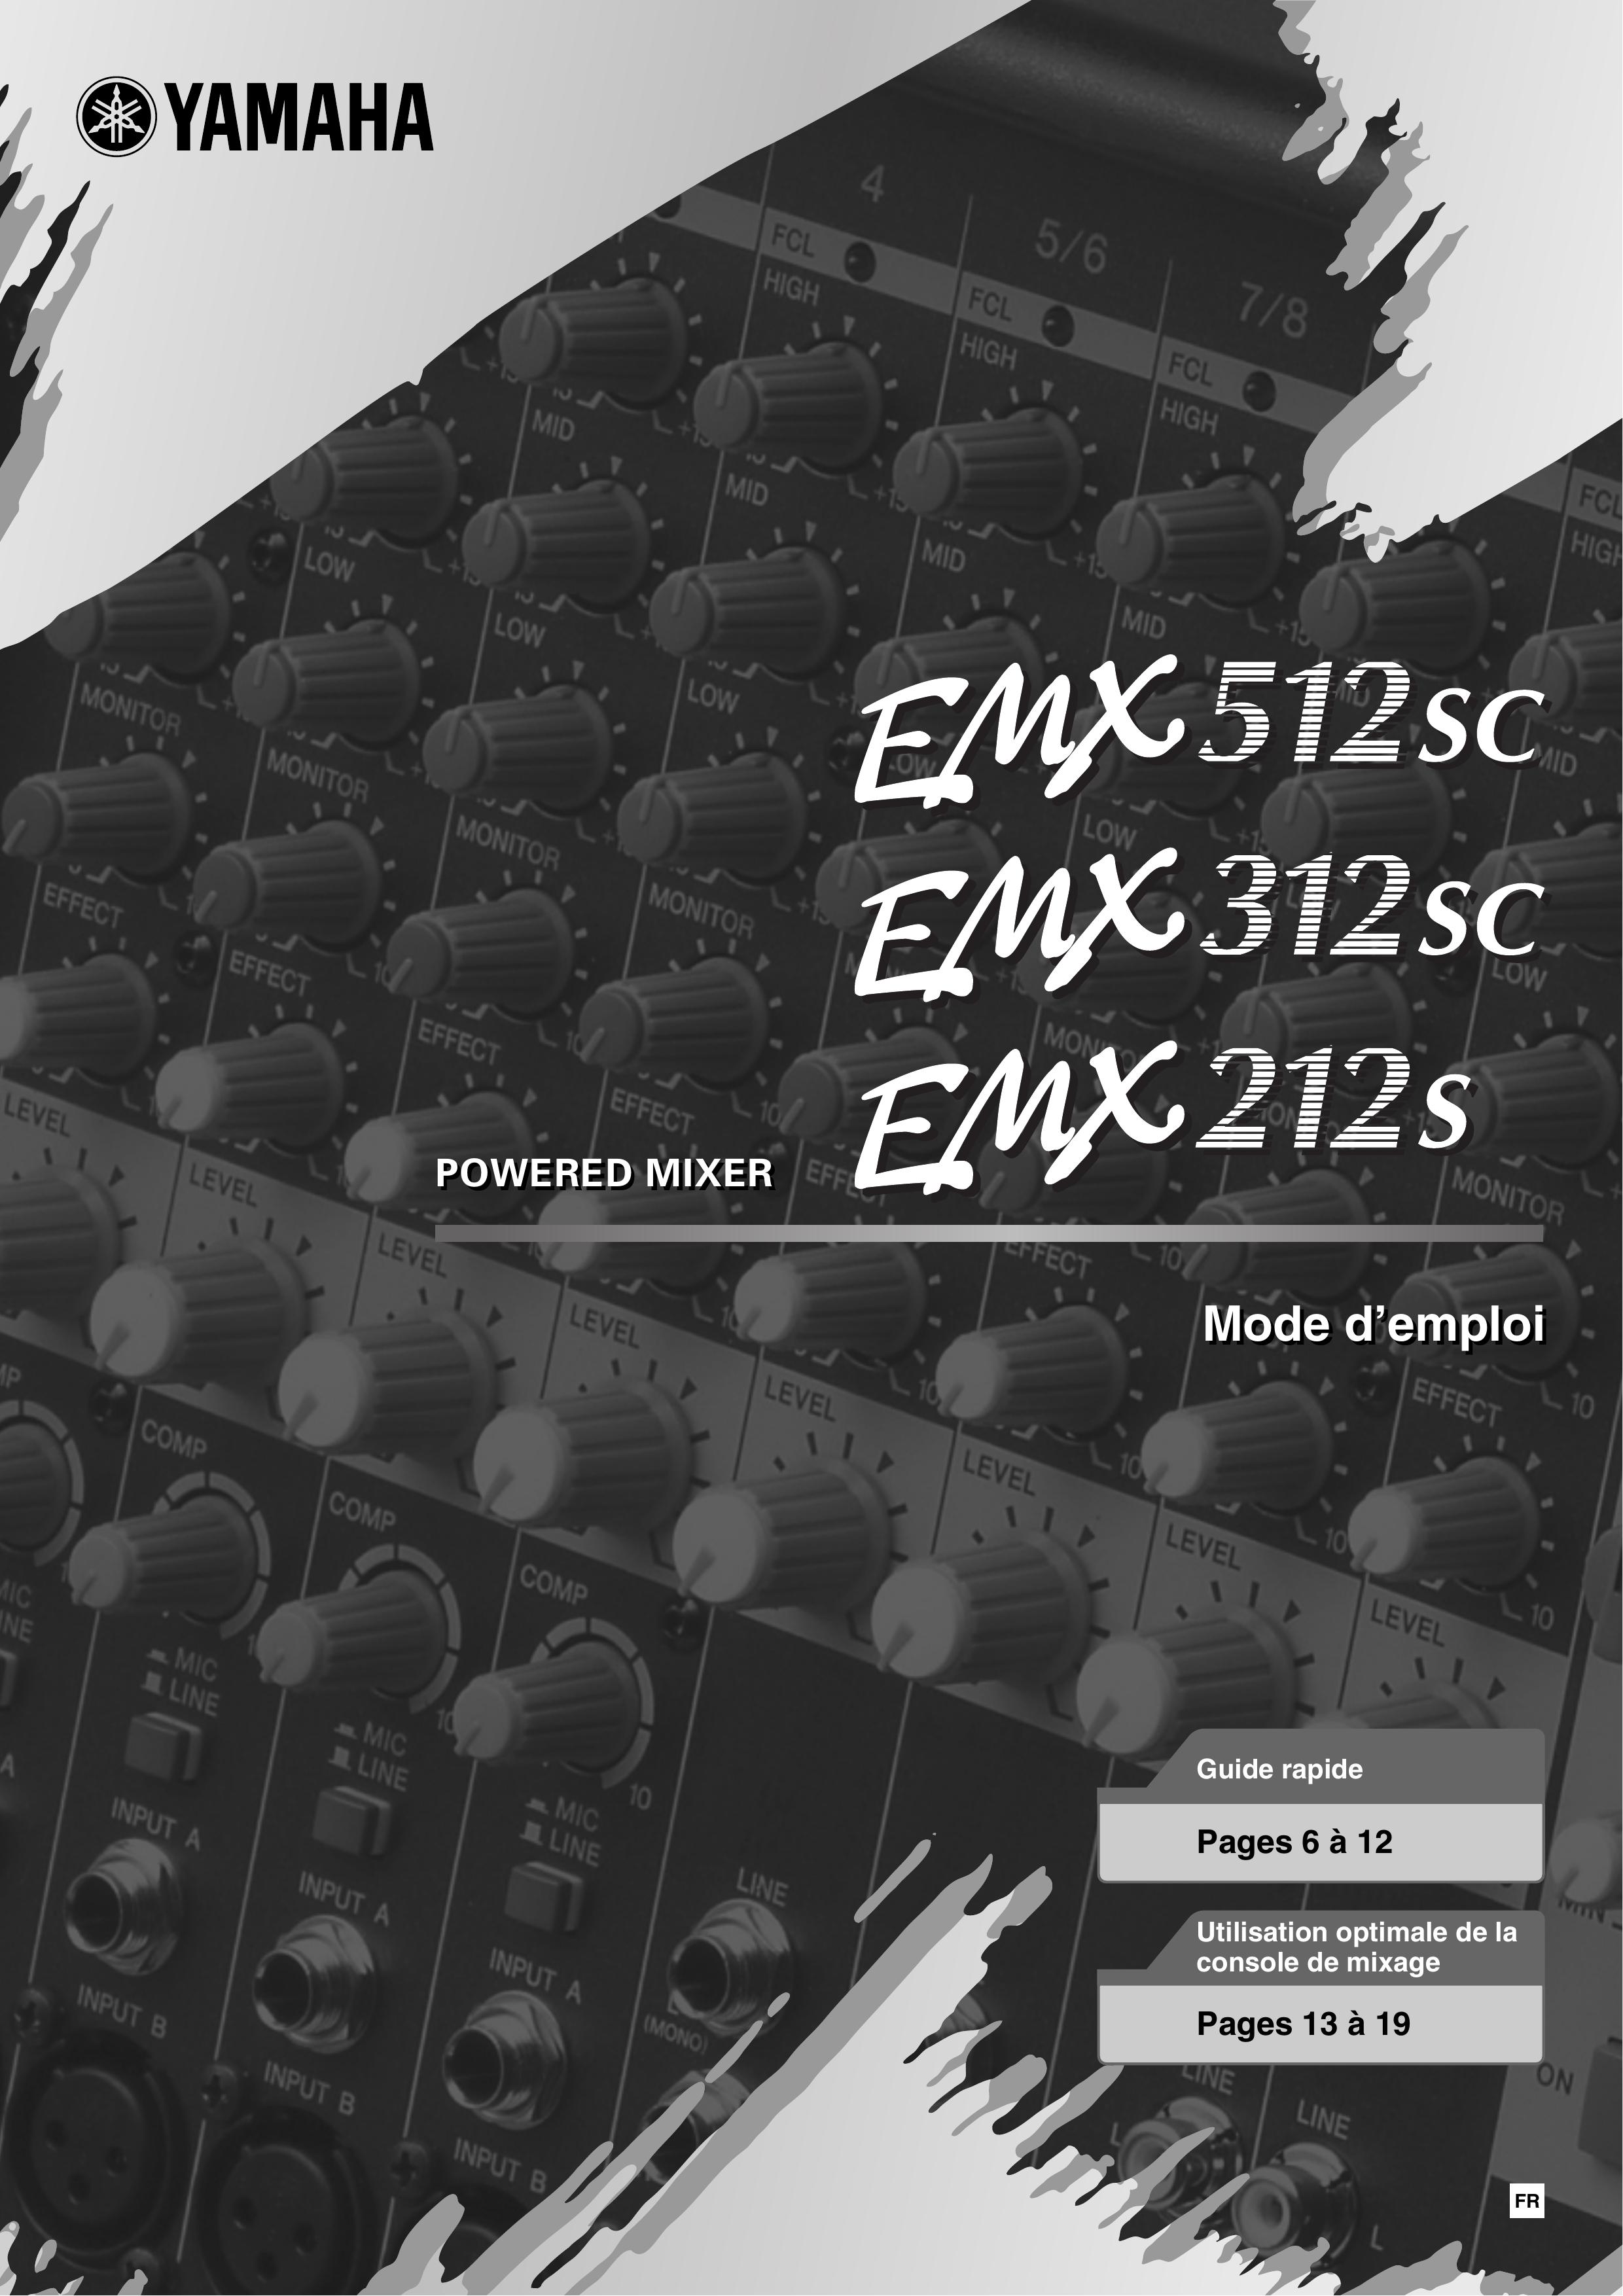 Yamaha EMX312Ssc Music Mixer User Manual